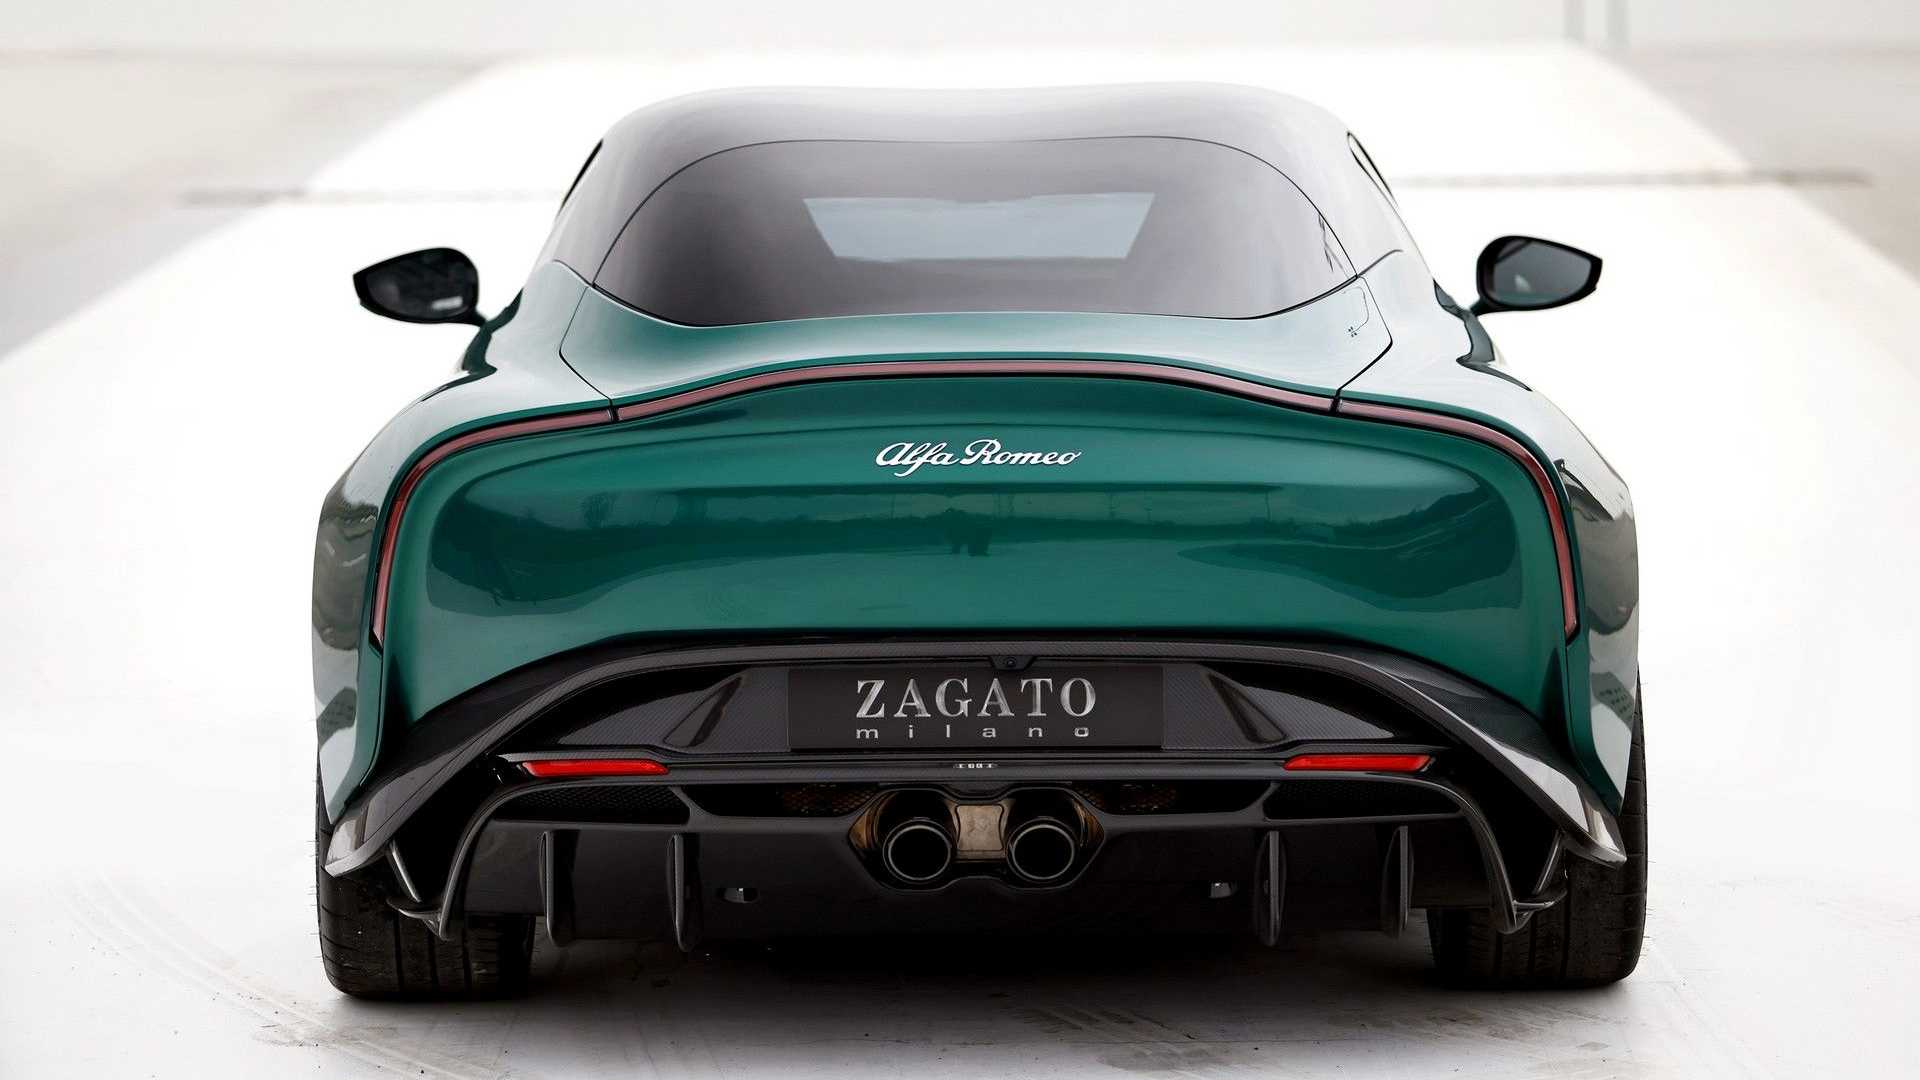 Alfa Romeo Giulia SWB Zagato tanıtıldı: Özel tasarım, V6 motor ve daha fazlası